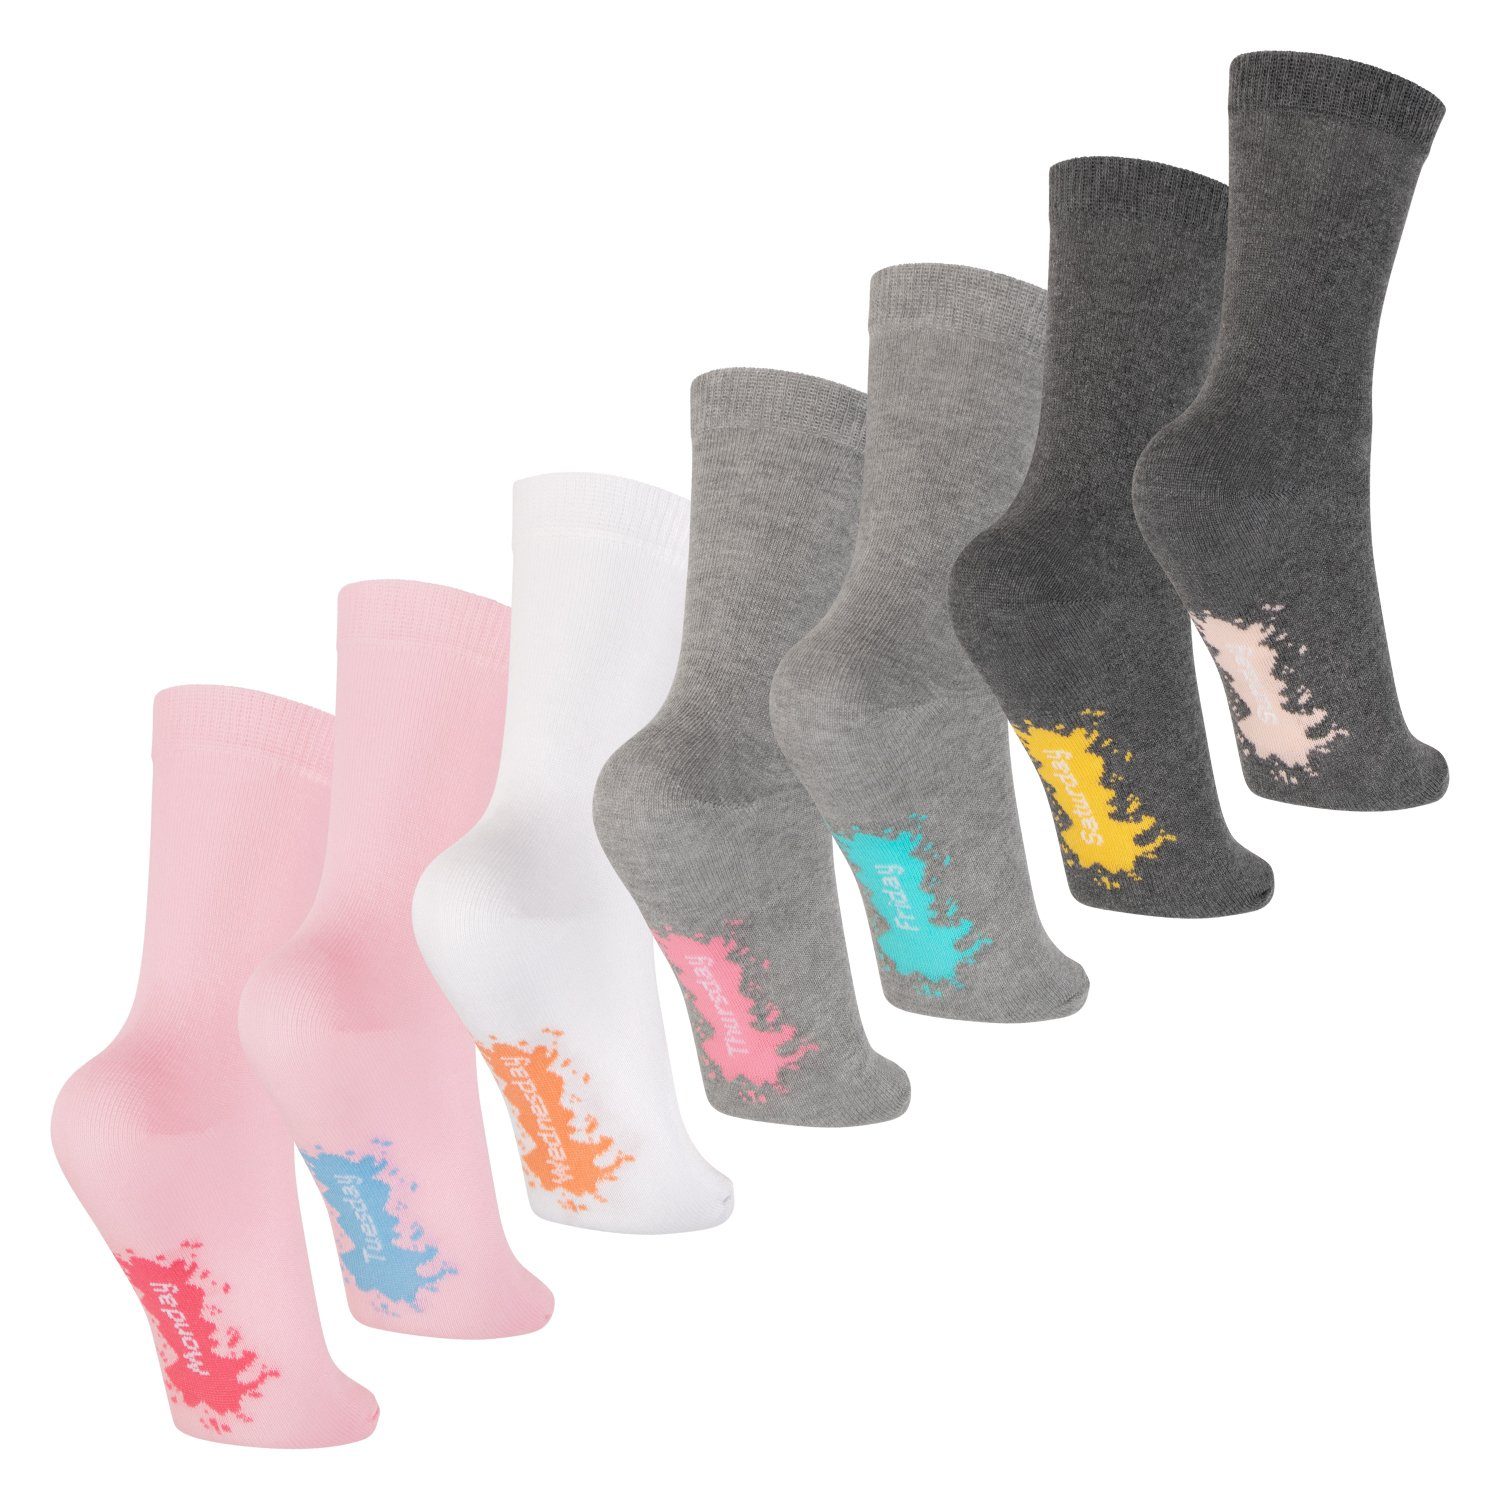 Footstar Freizeitsocken Kinder Wochentage Socken (7 Paar) für Jungen & Mädchen pastell mix | Socken